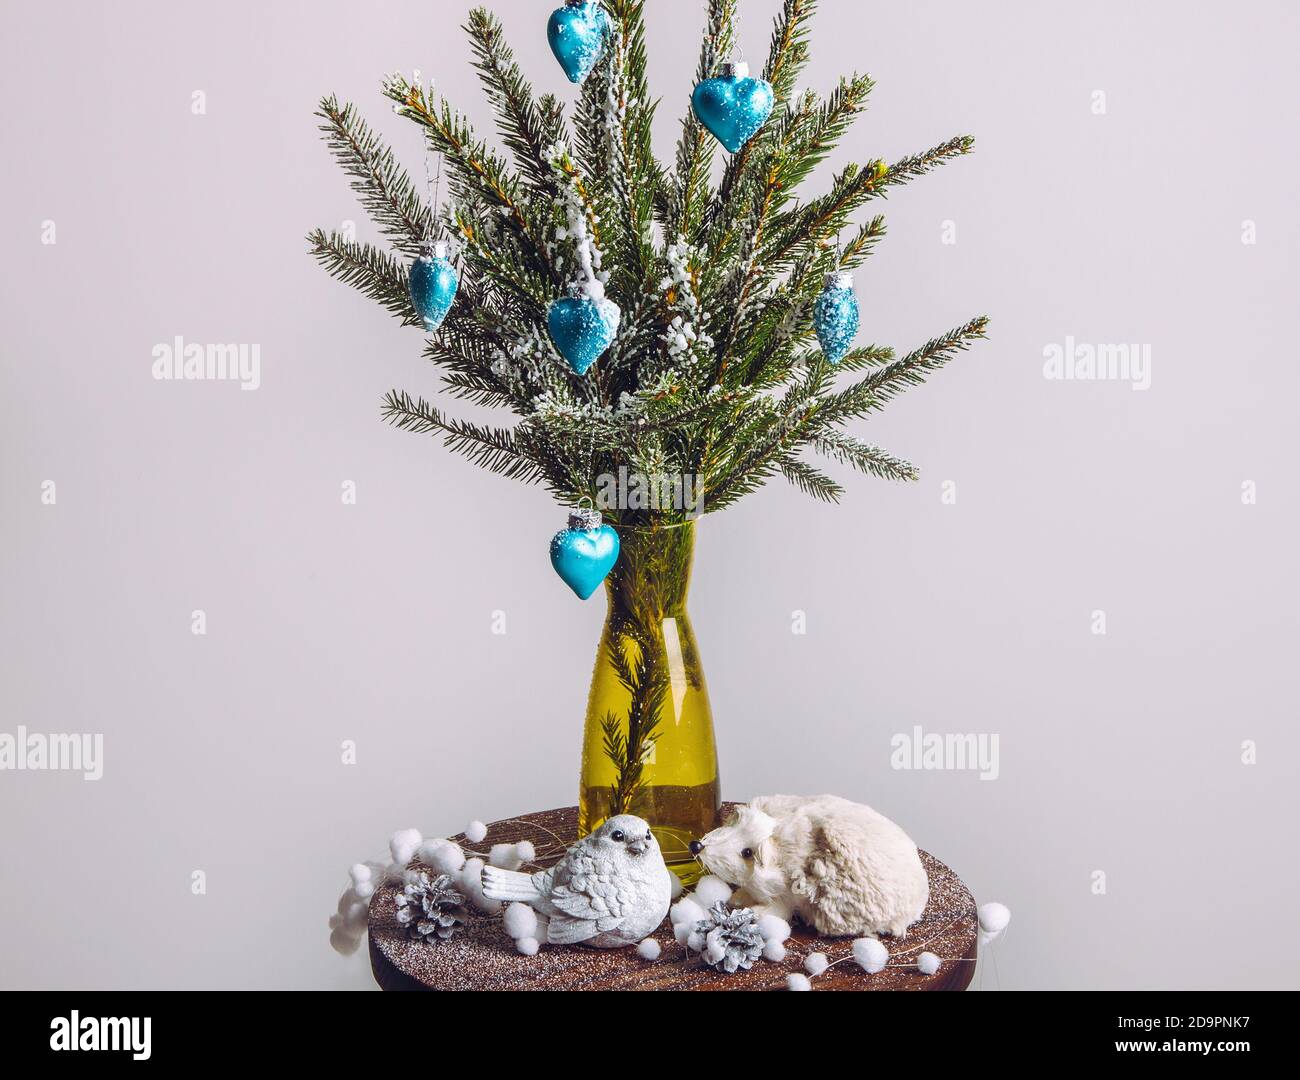 Neige pulvérisée décorée branches d'arbre de Noël en hiver, artisanat. Prise de vue en studio, éclairage en intérieur blanc, arrière-plan minimaliste, espace de copie. Banque D'Images